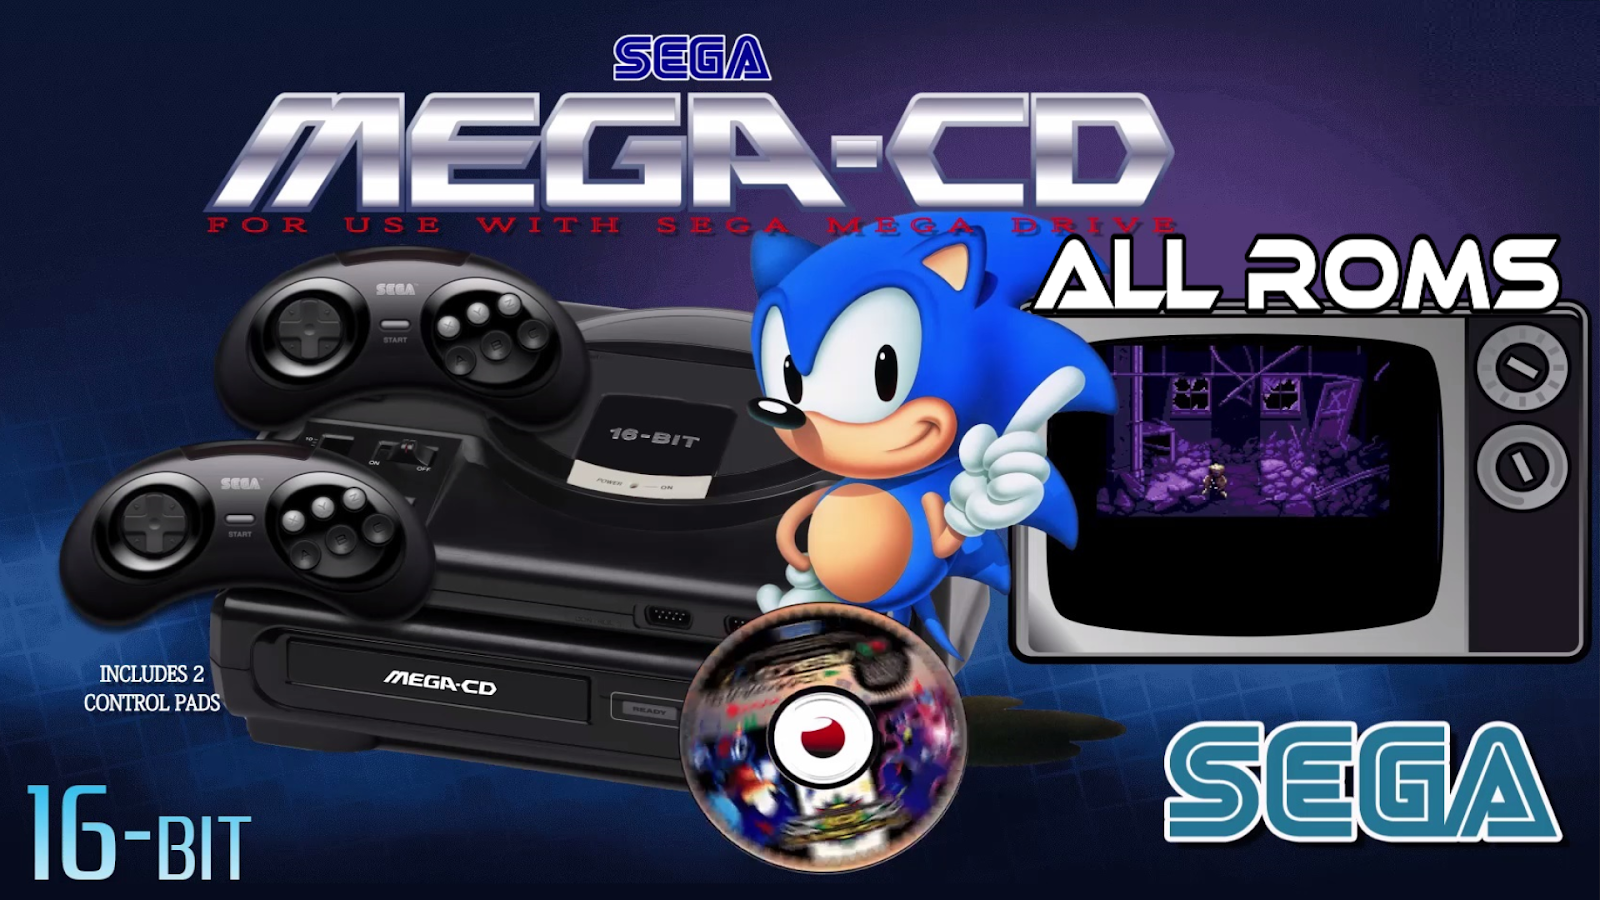 Sega Mega-CD. Sega ROMS. Sega Mega Drive Ultimate collection Xbox 360. Sega CD ROMS.